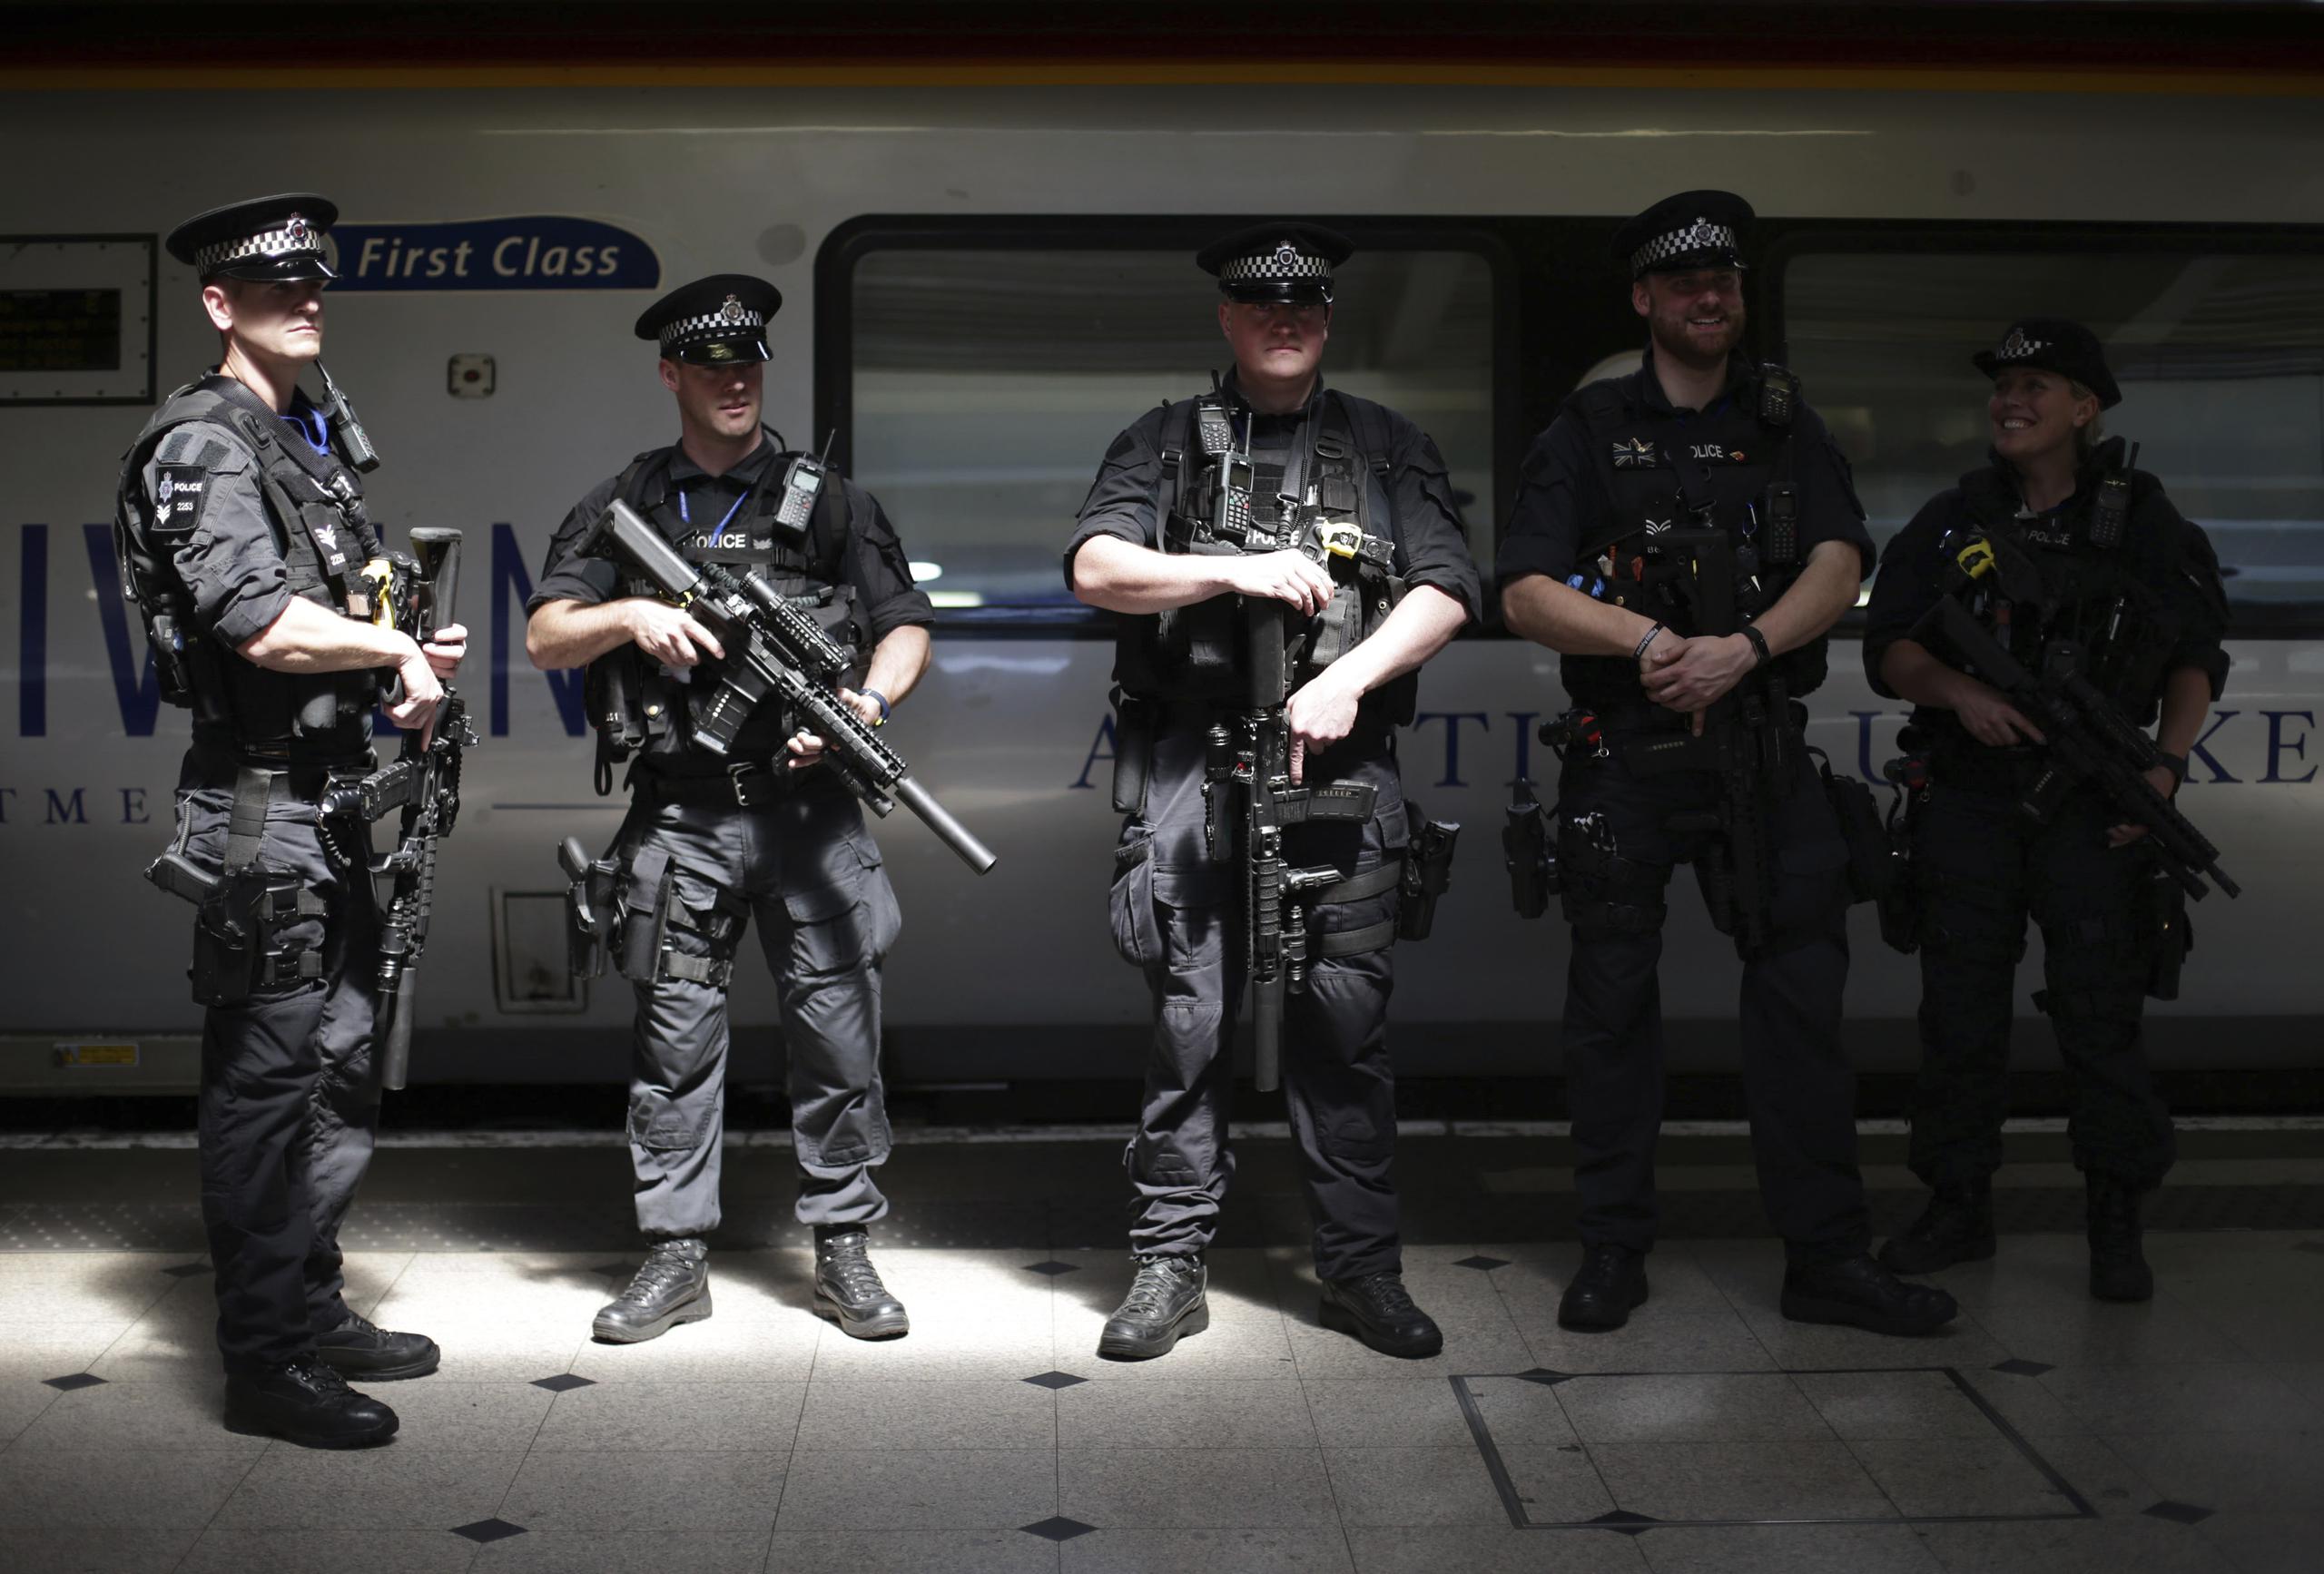 Agentes frente a un tren que va rumbo a Birmingham New Street, en la estación de Euston, Londres. (Yui Mok / PA Wire)